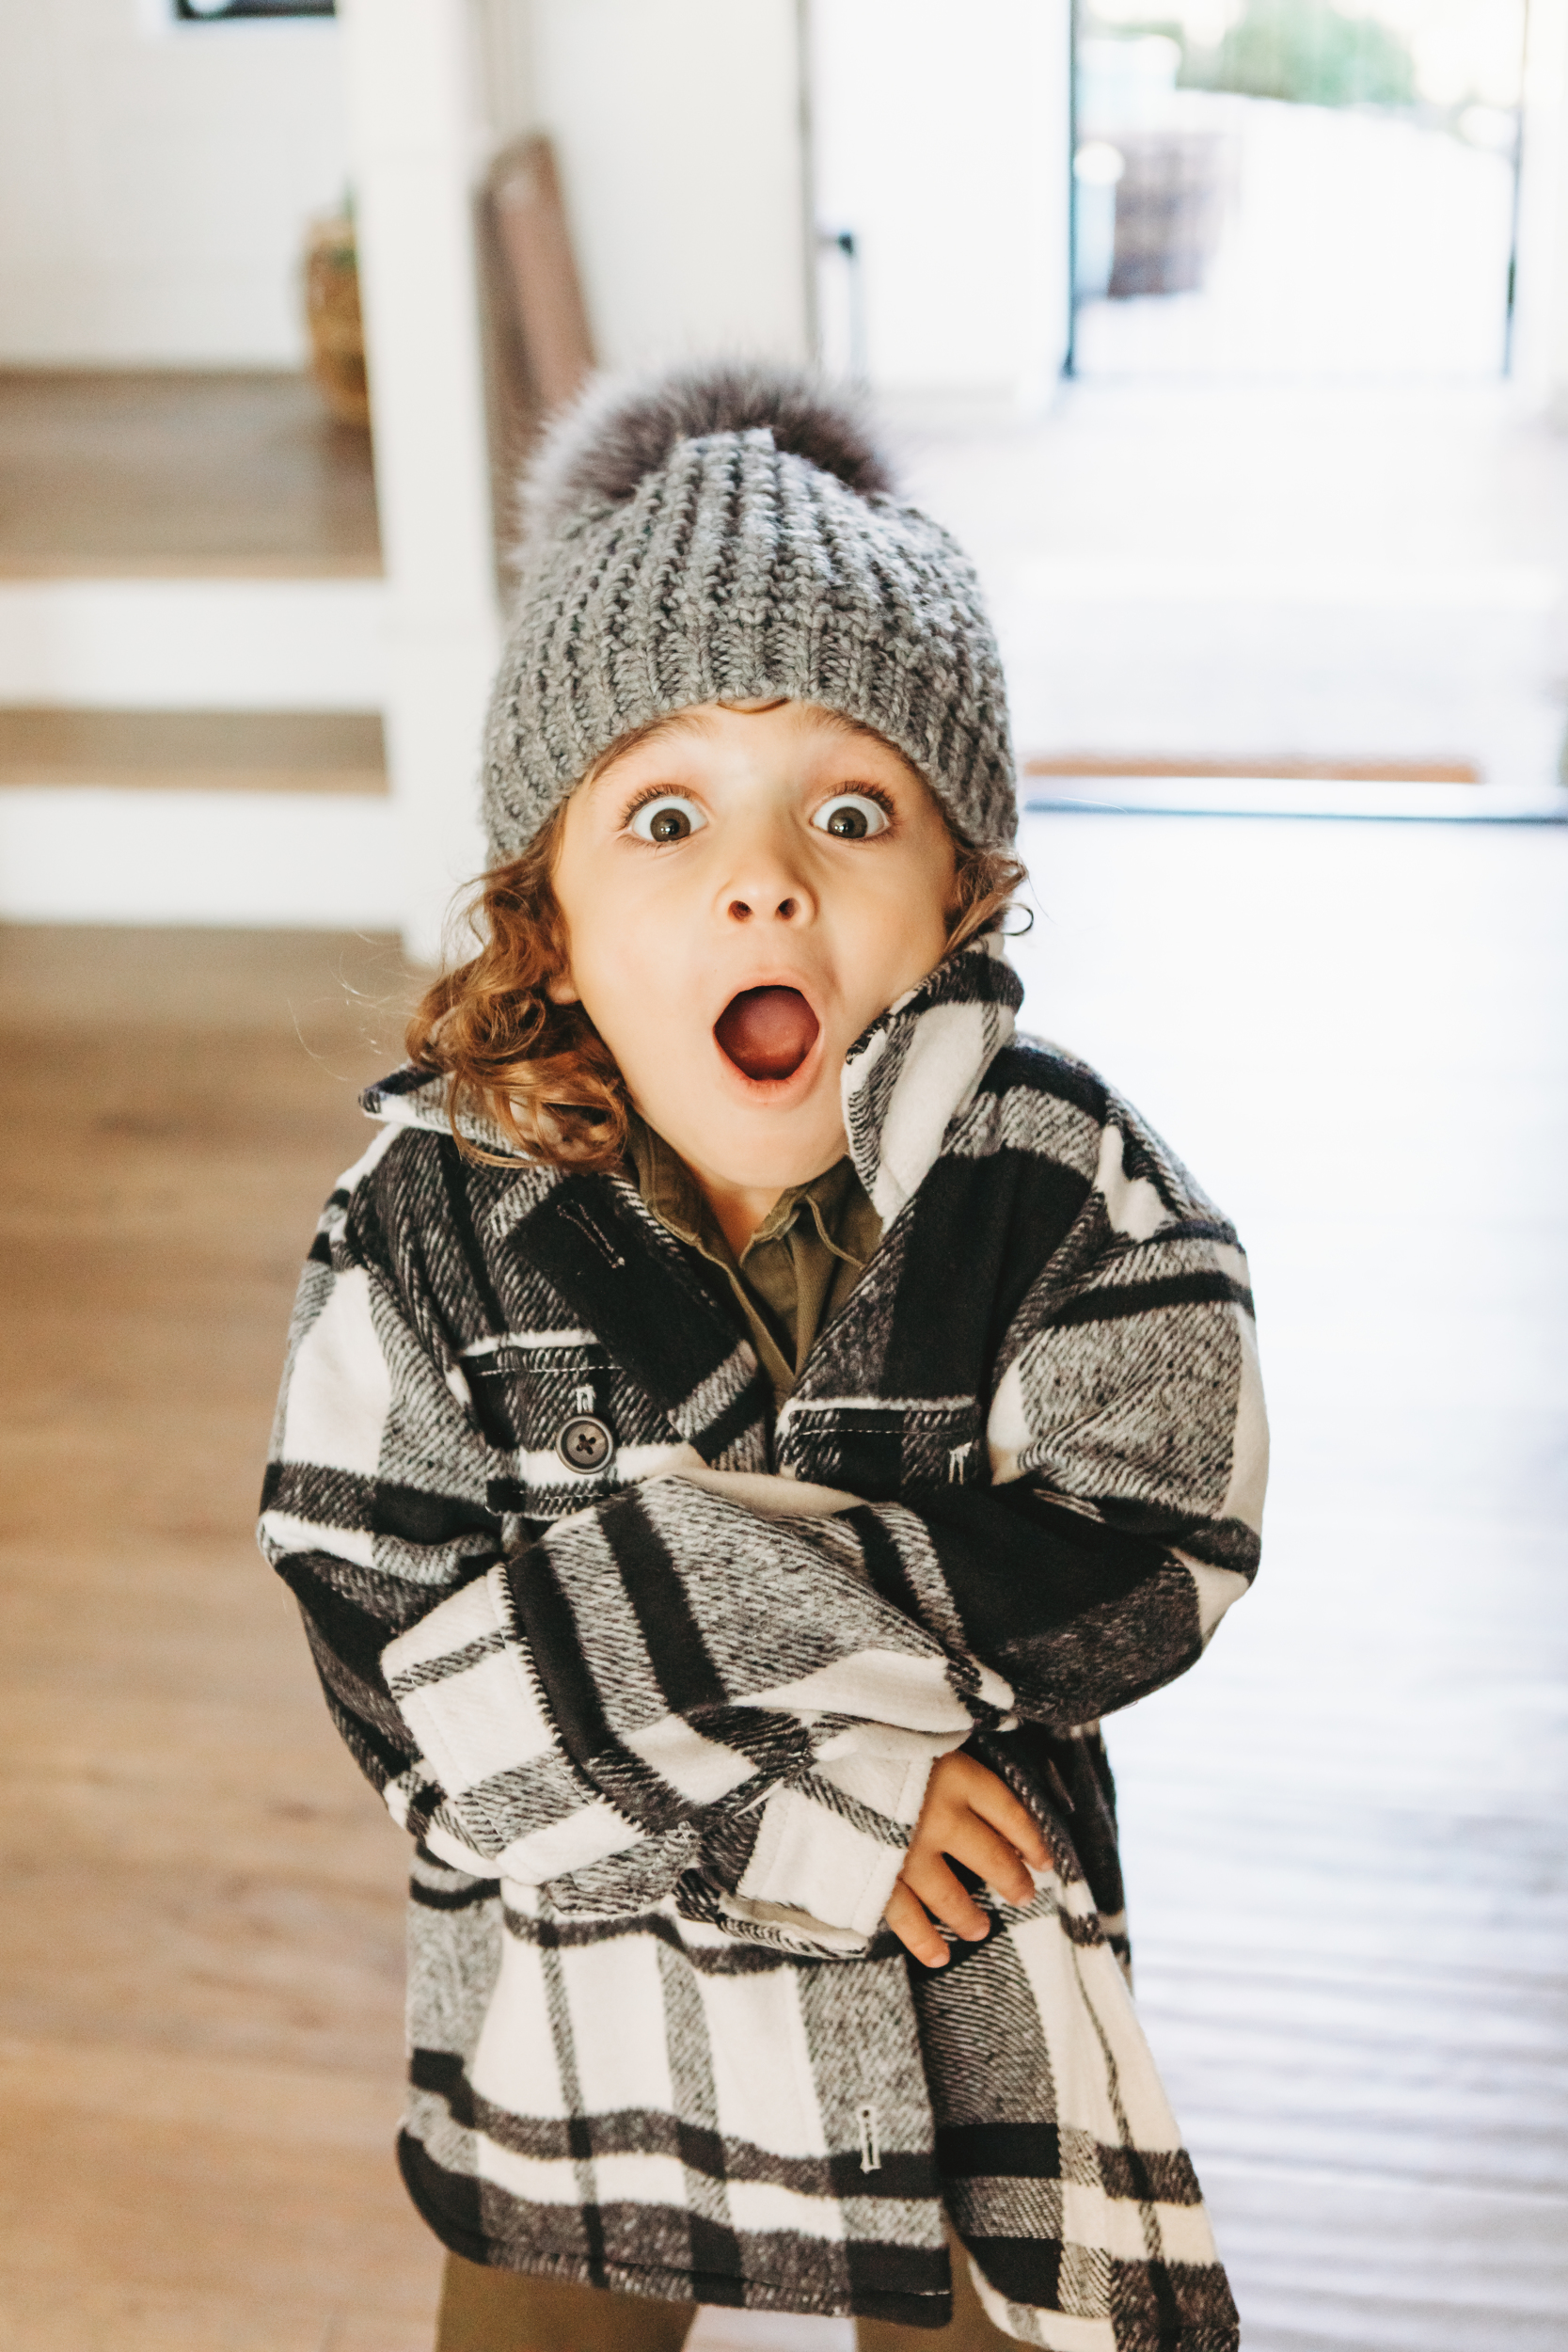 little boy looking surprised in winter jacket